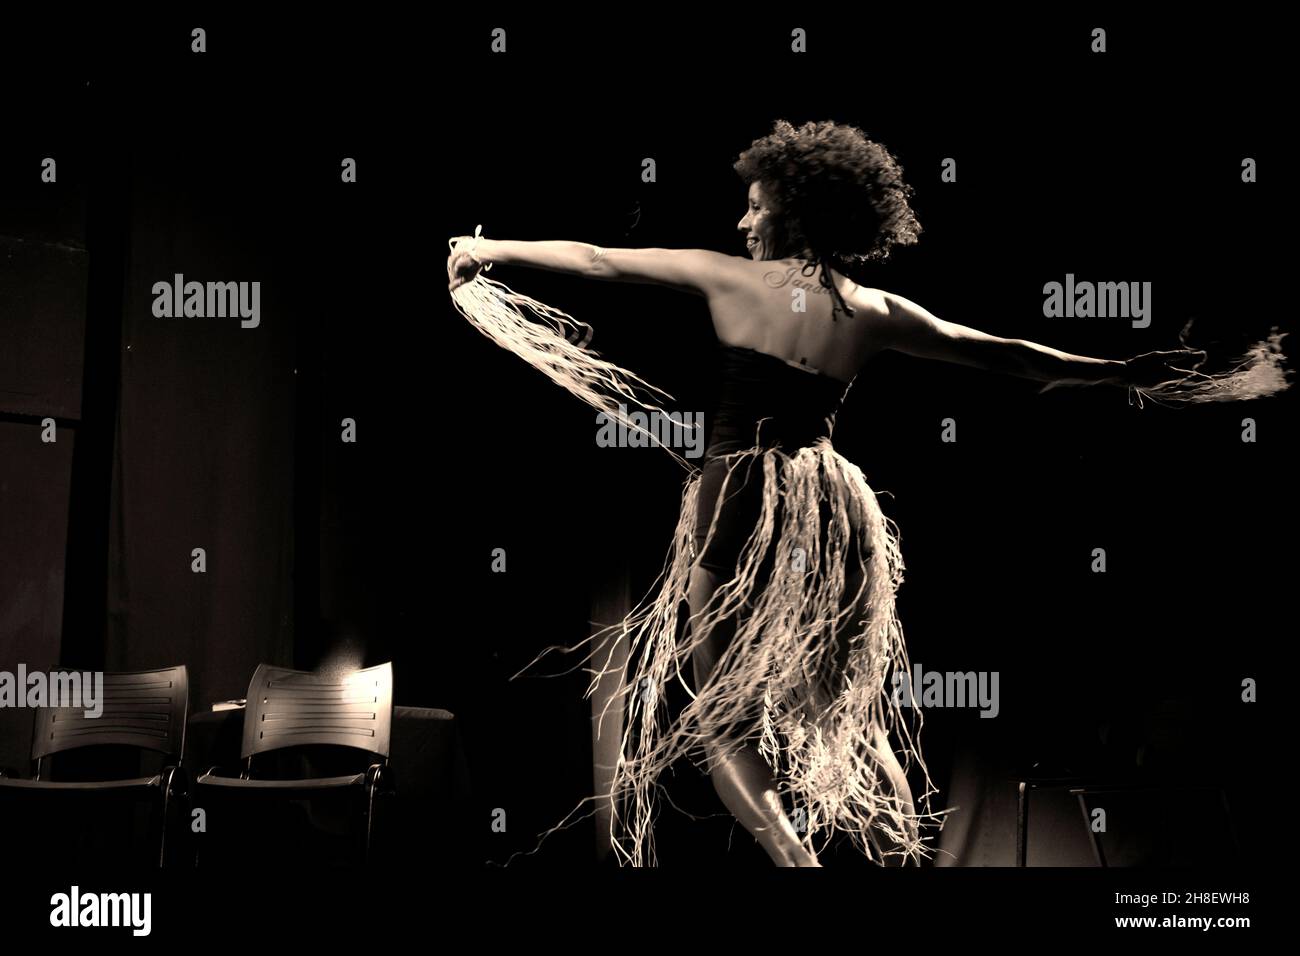 Ritratto di una donna che balla sul palco su sfondo nero. Salvador, Bahia, Brasile. Foto Stock